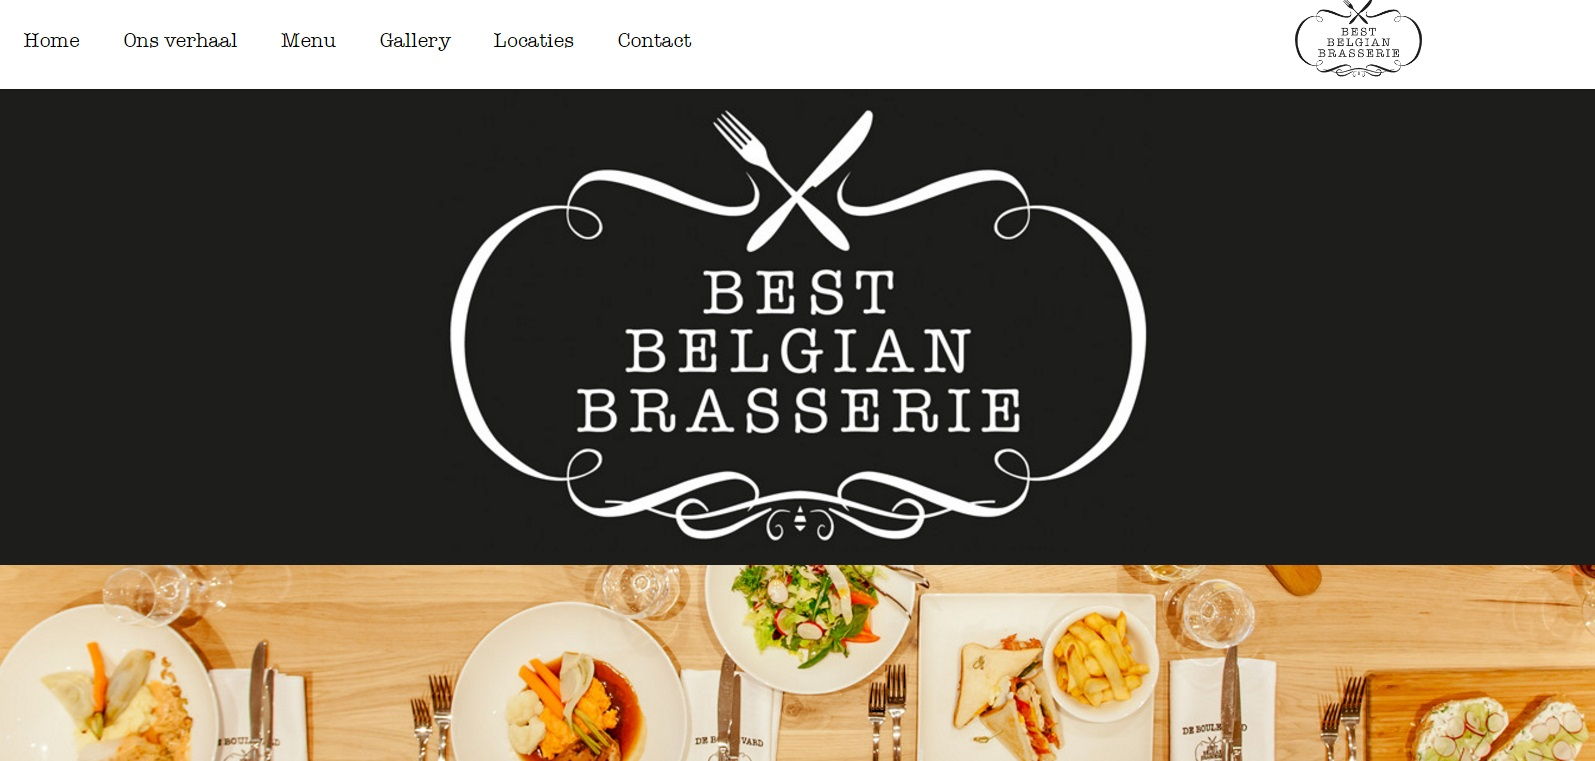 Best Belgian Brasserie